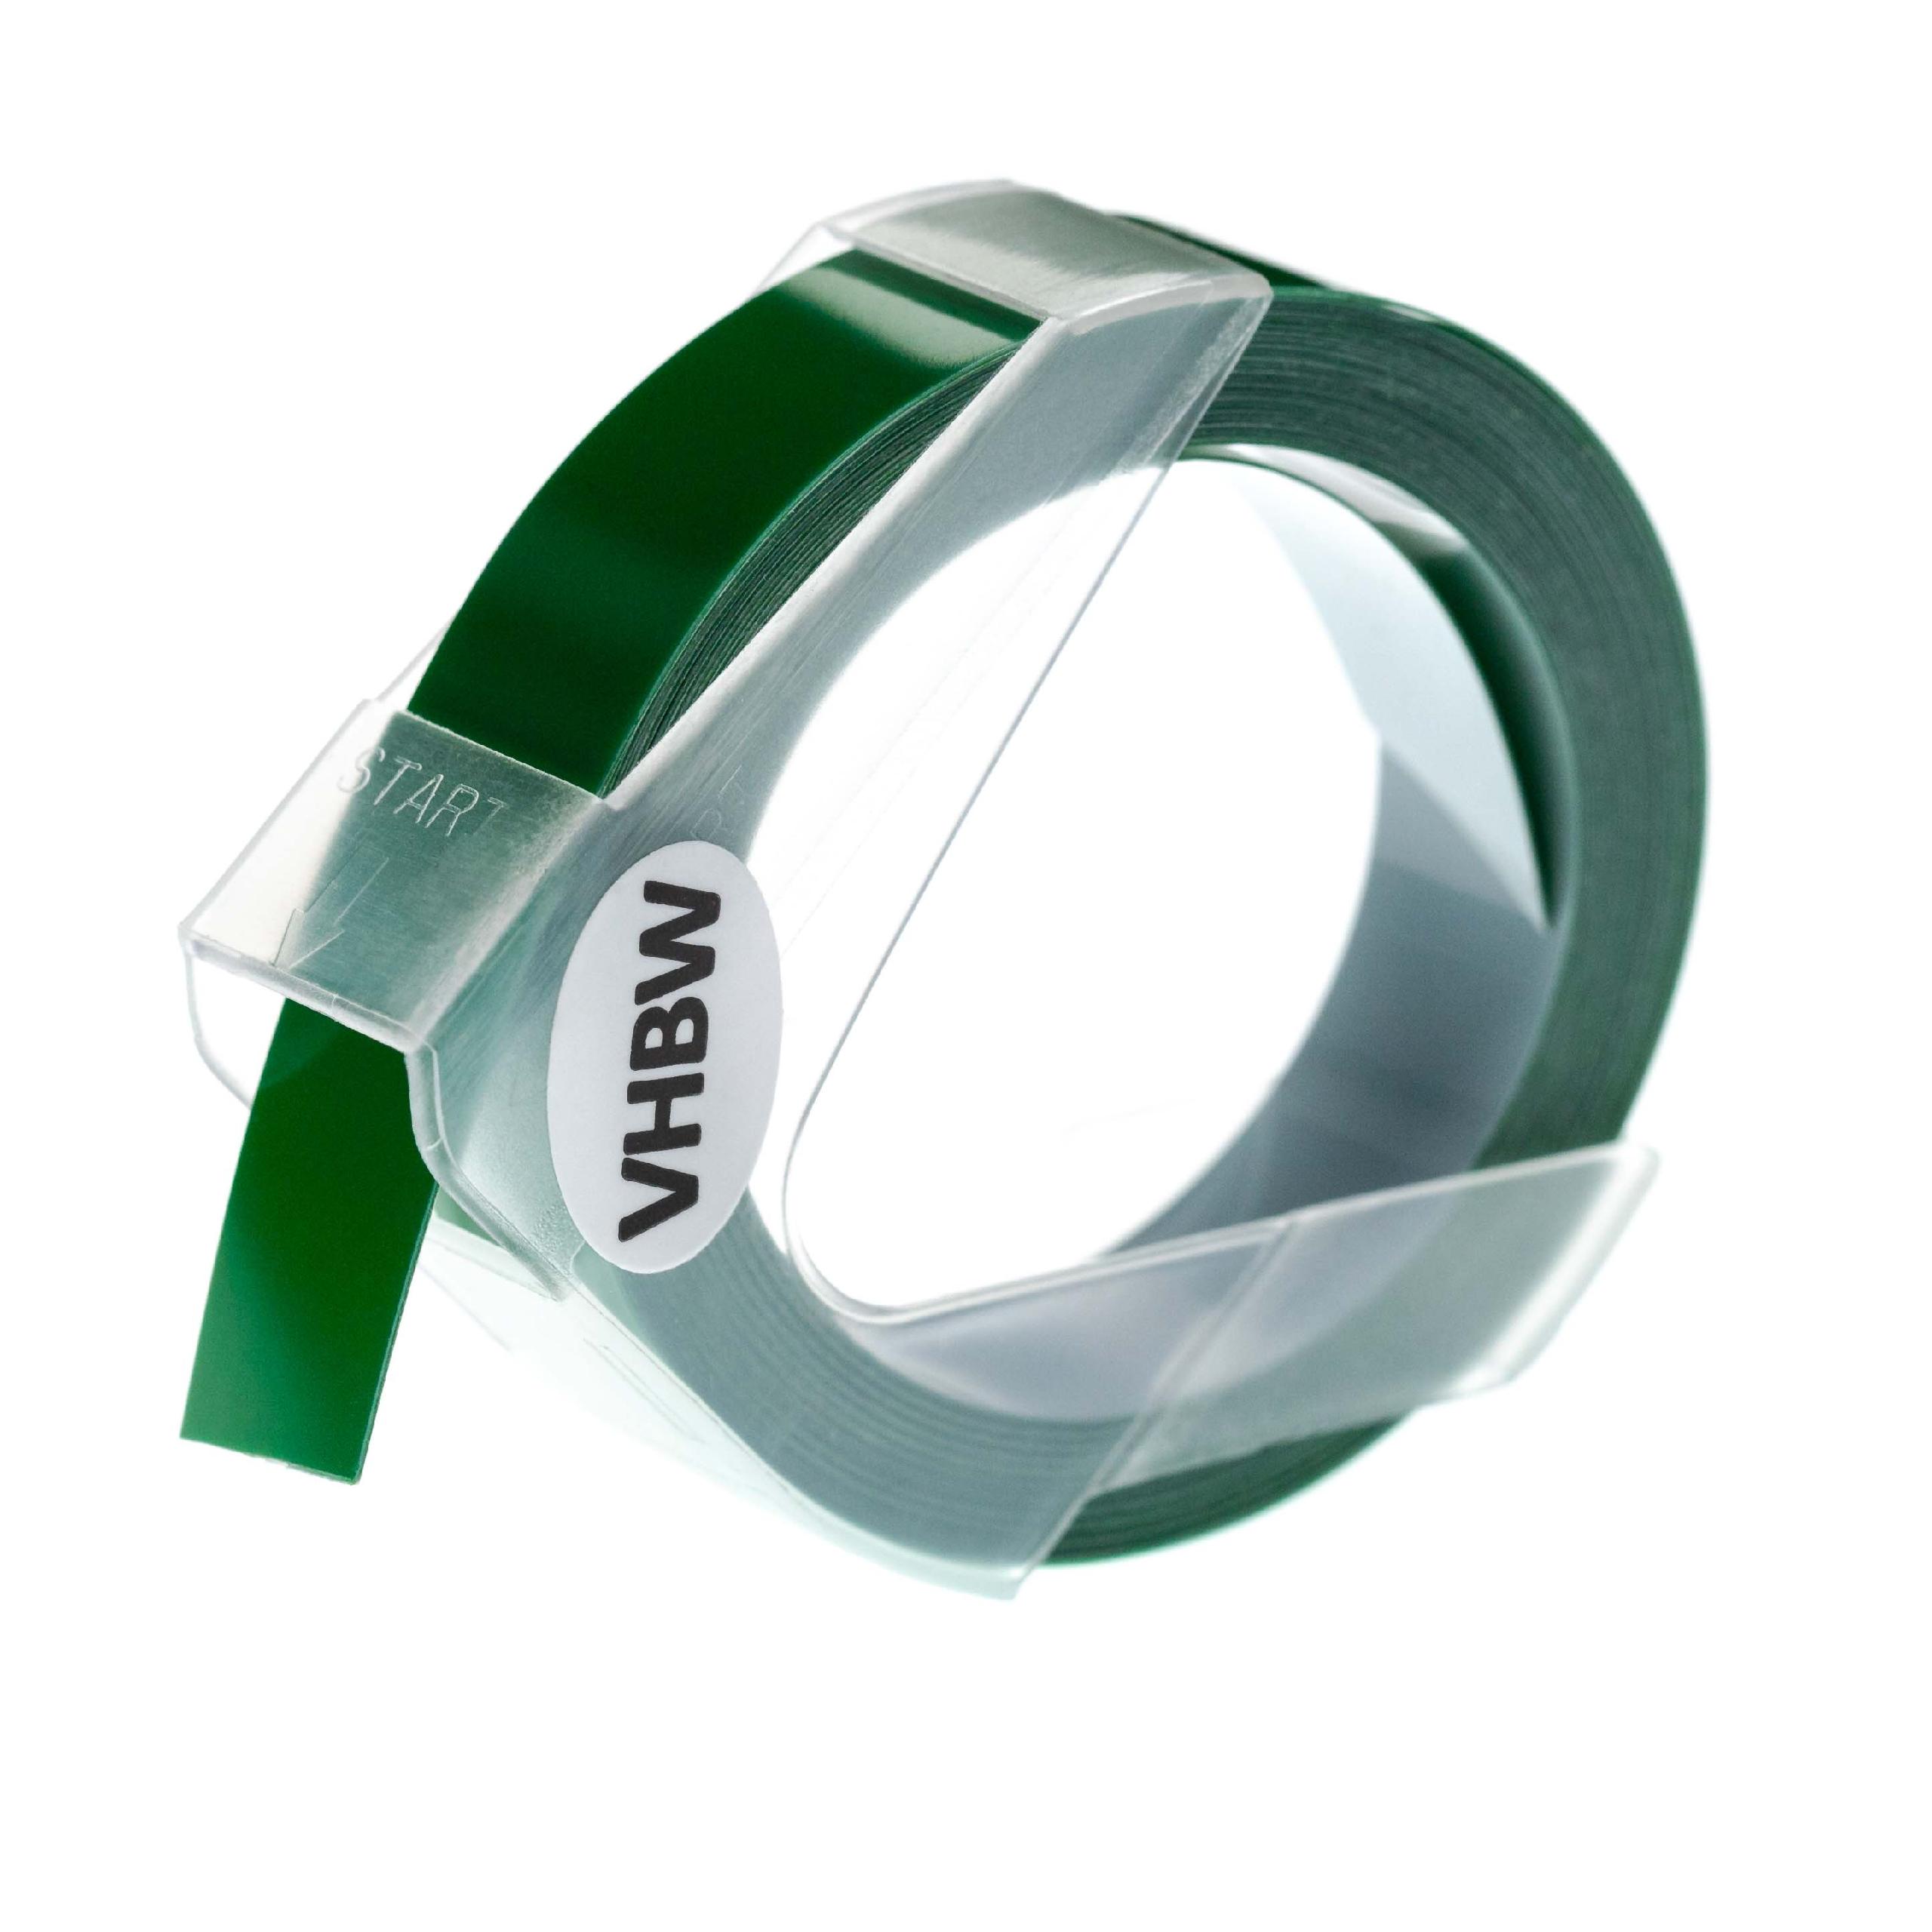 Casete cinta relieve 3D Casete cinta escritura reemplaza Dymo 0898162 Blanco su Verde